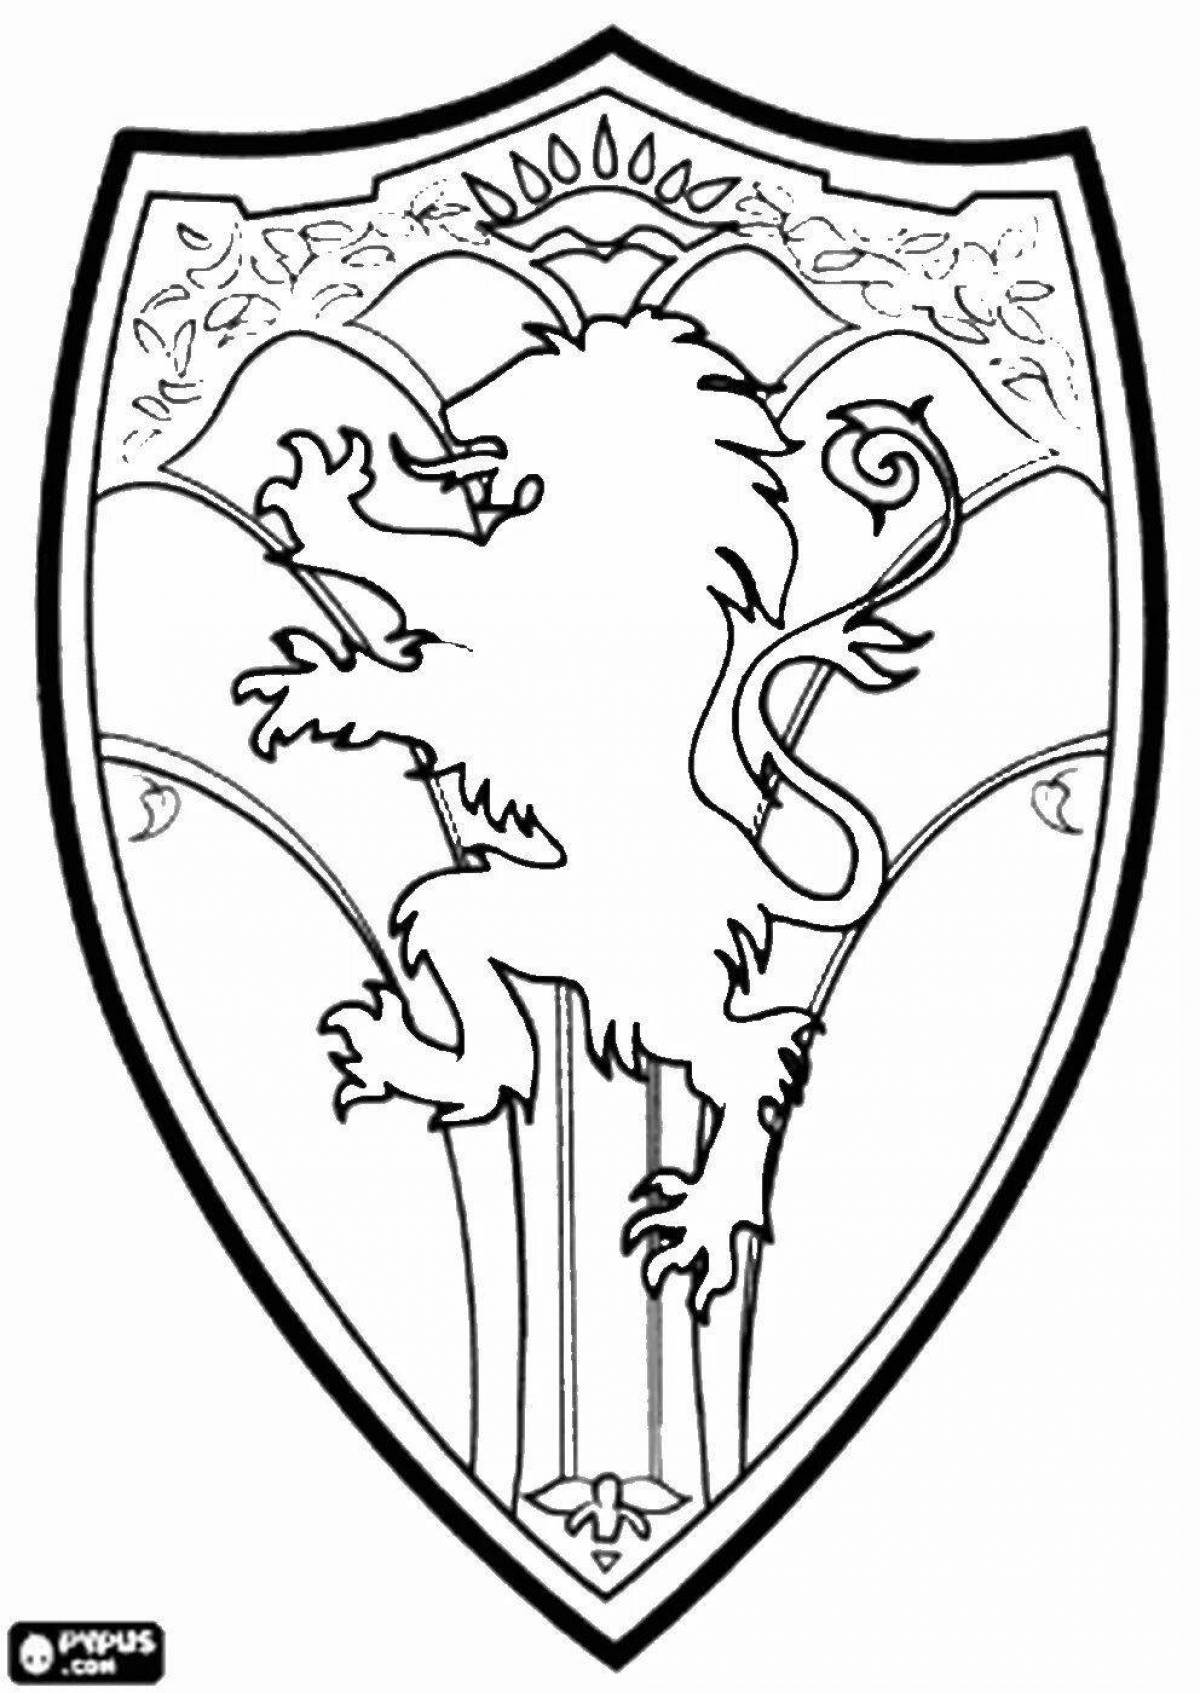 Величественная раскраска рыцарский герб